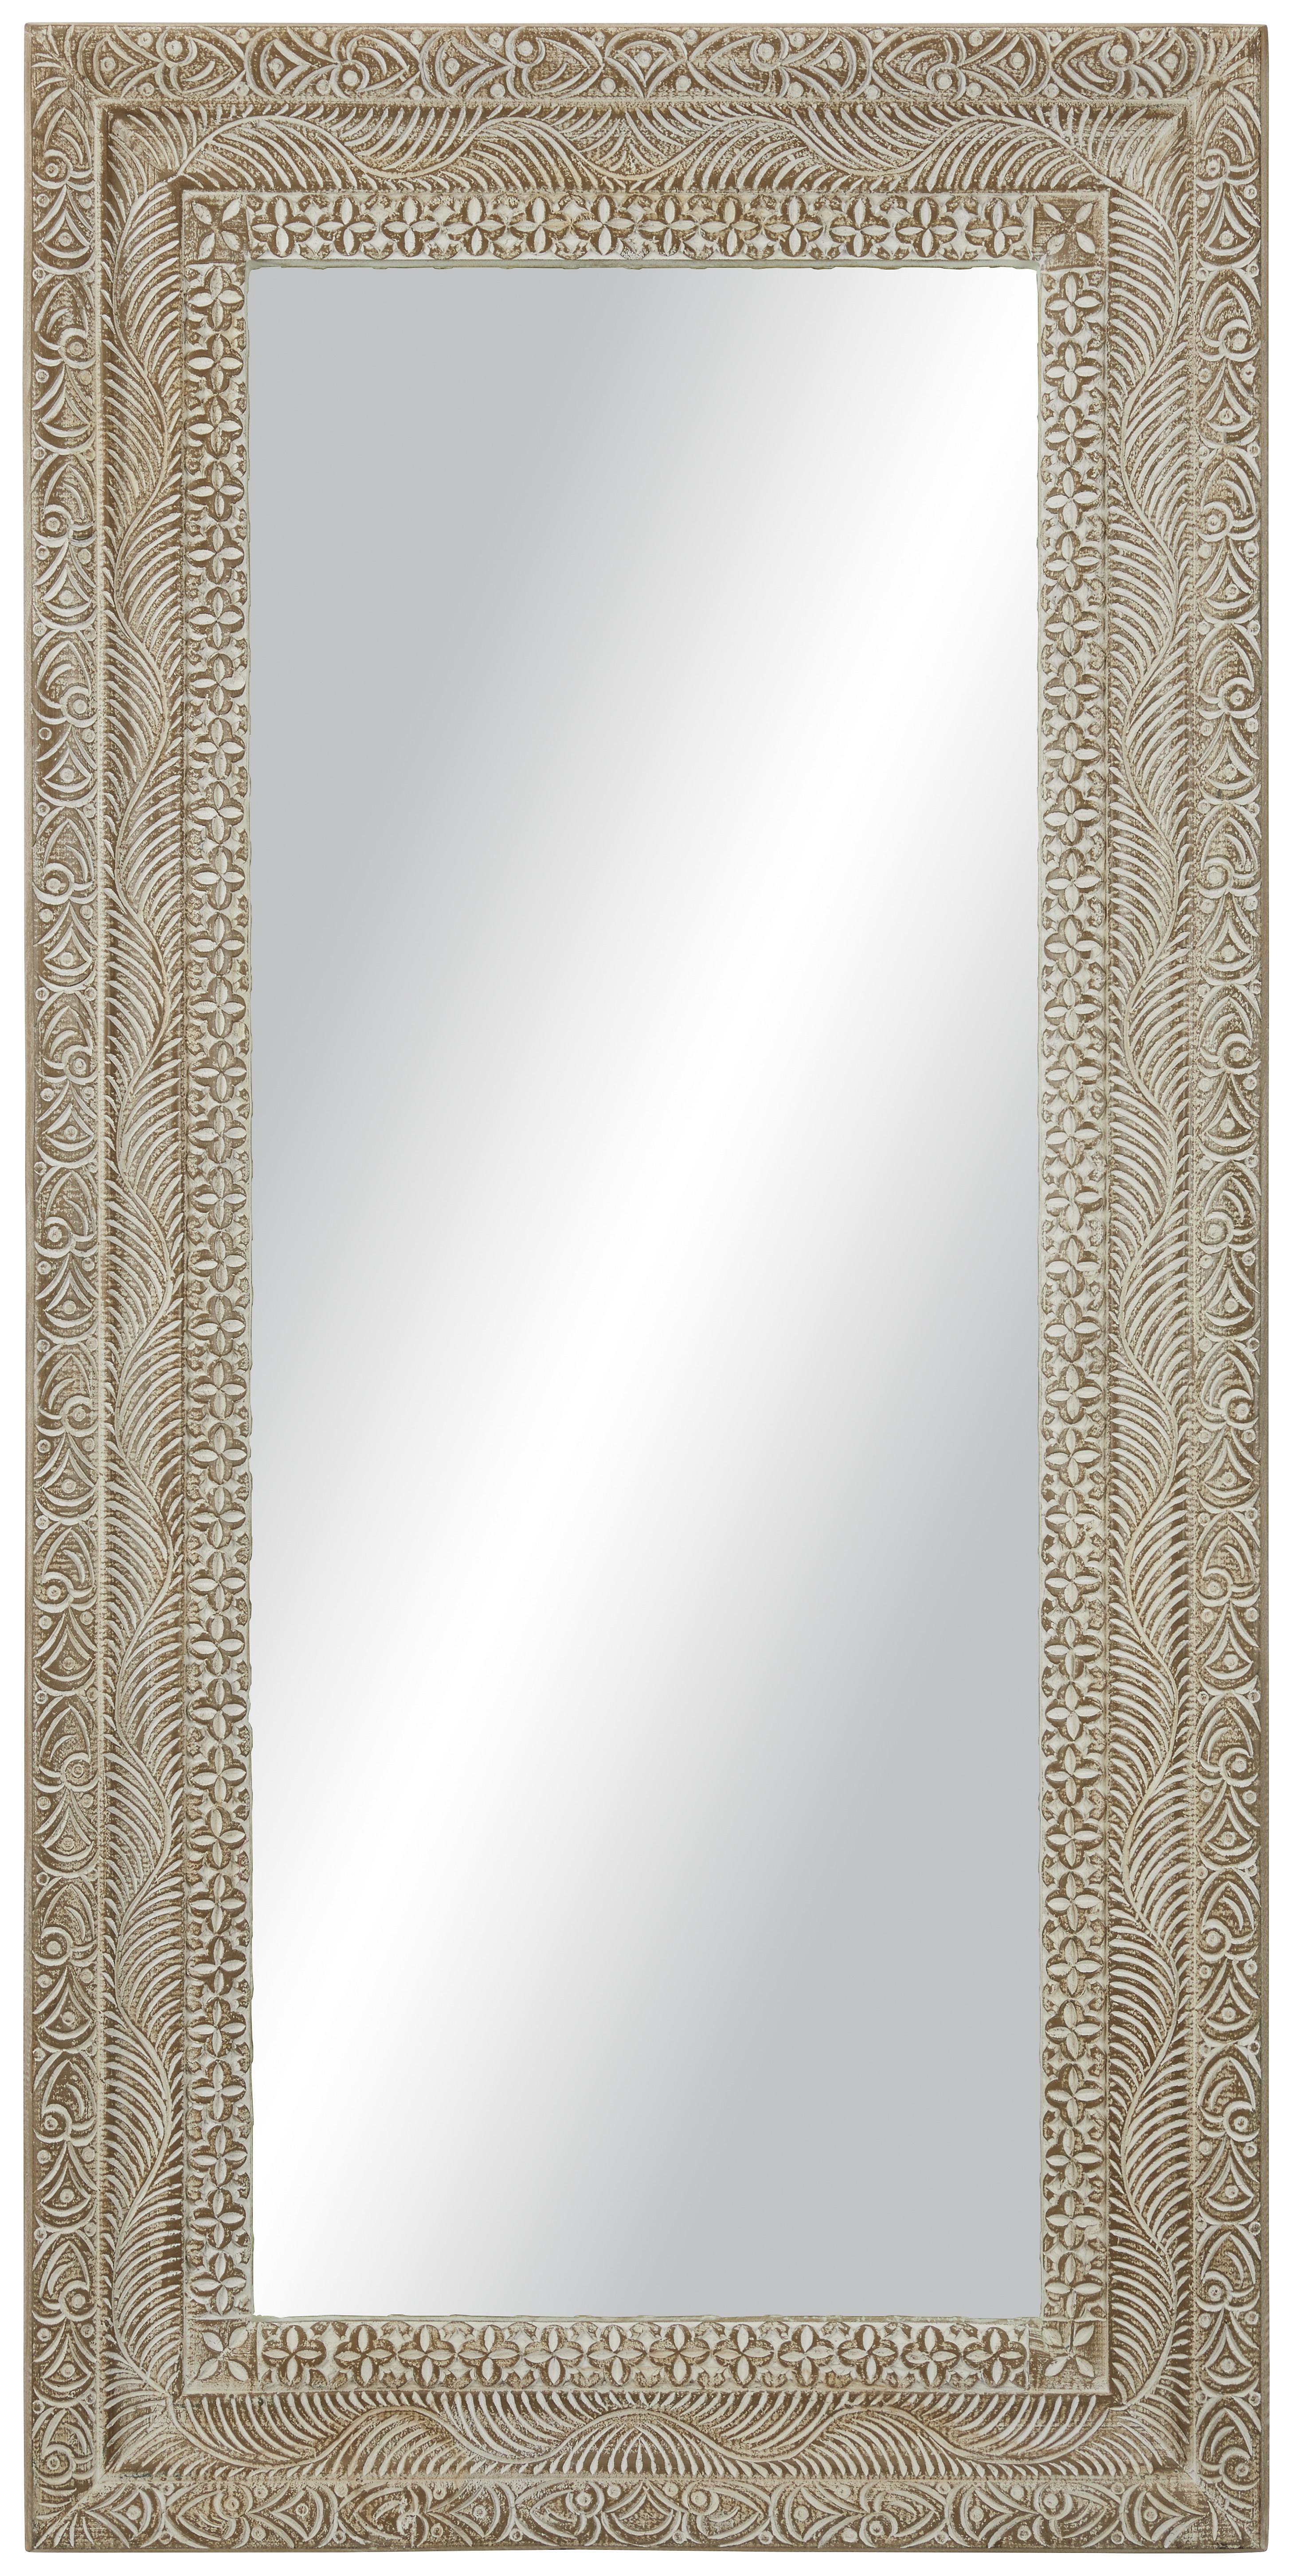 Wandspiegel in Braun ca. 90x180x6cm - Braun/Weiß, LIFESTYLE, Holz/Holzwerkstoff (90/180/6cm) - Premium Living